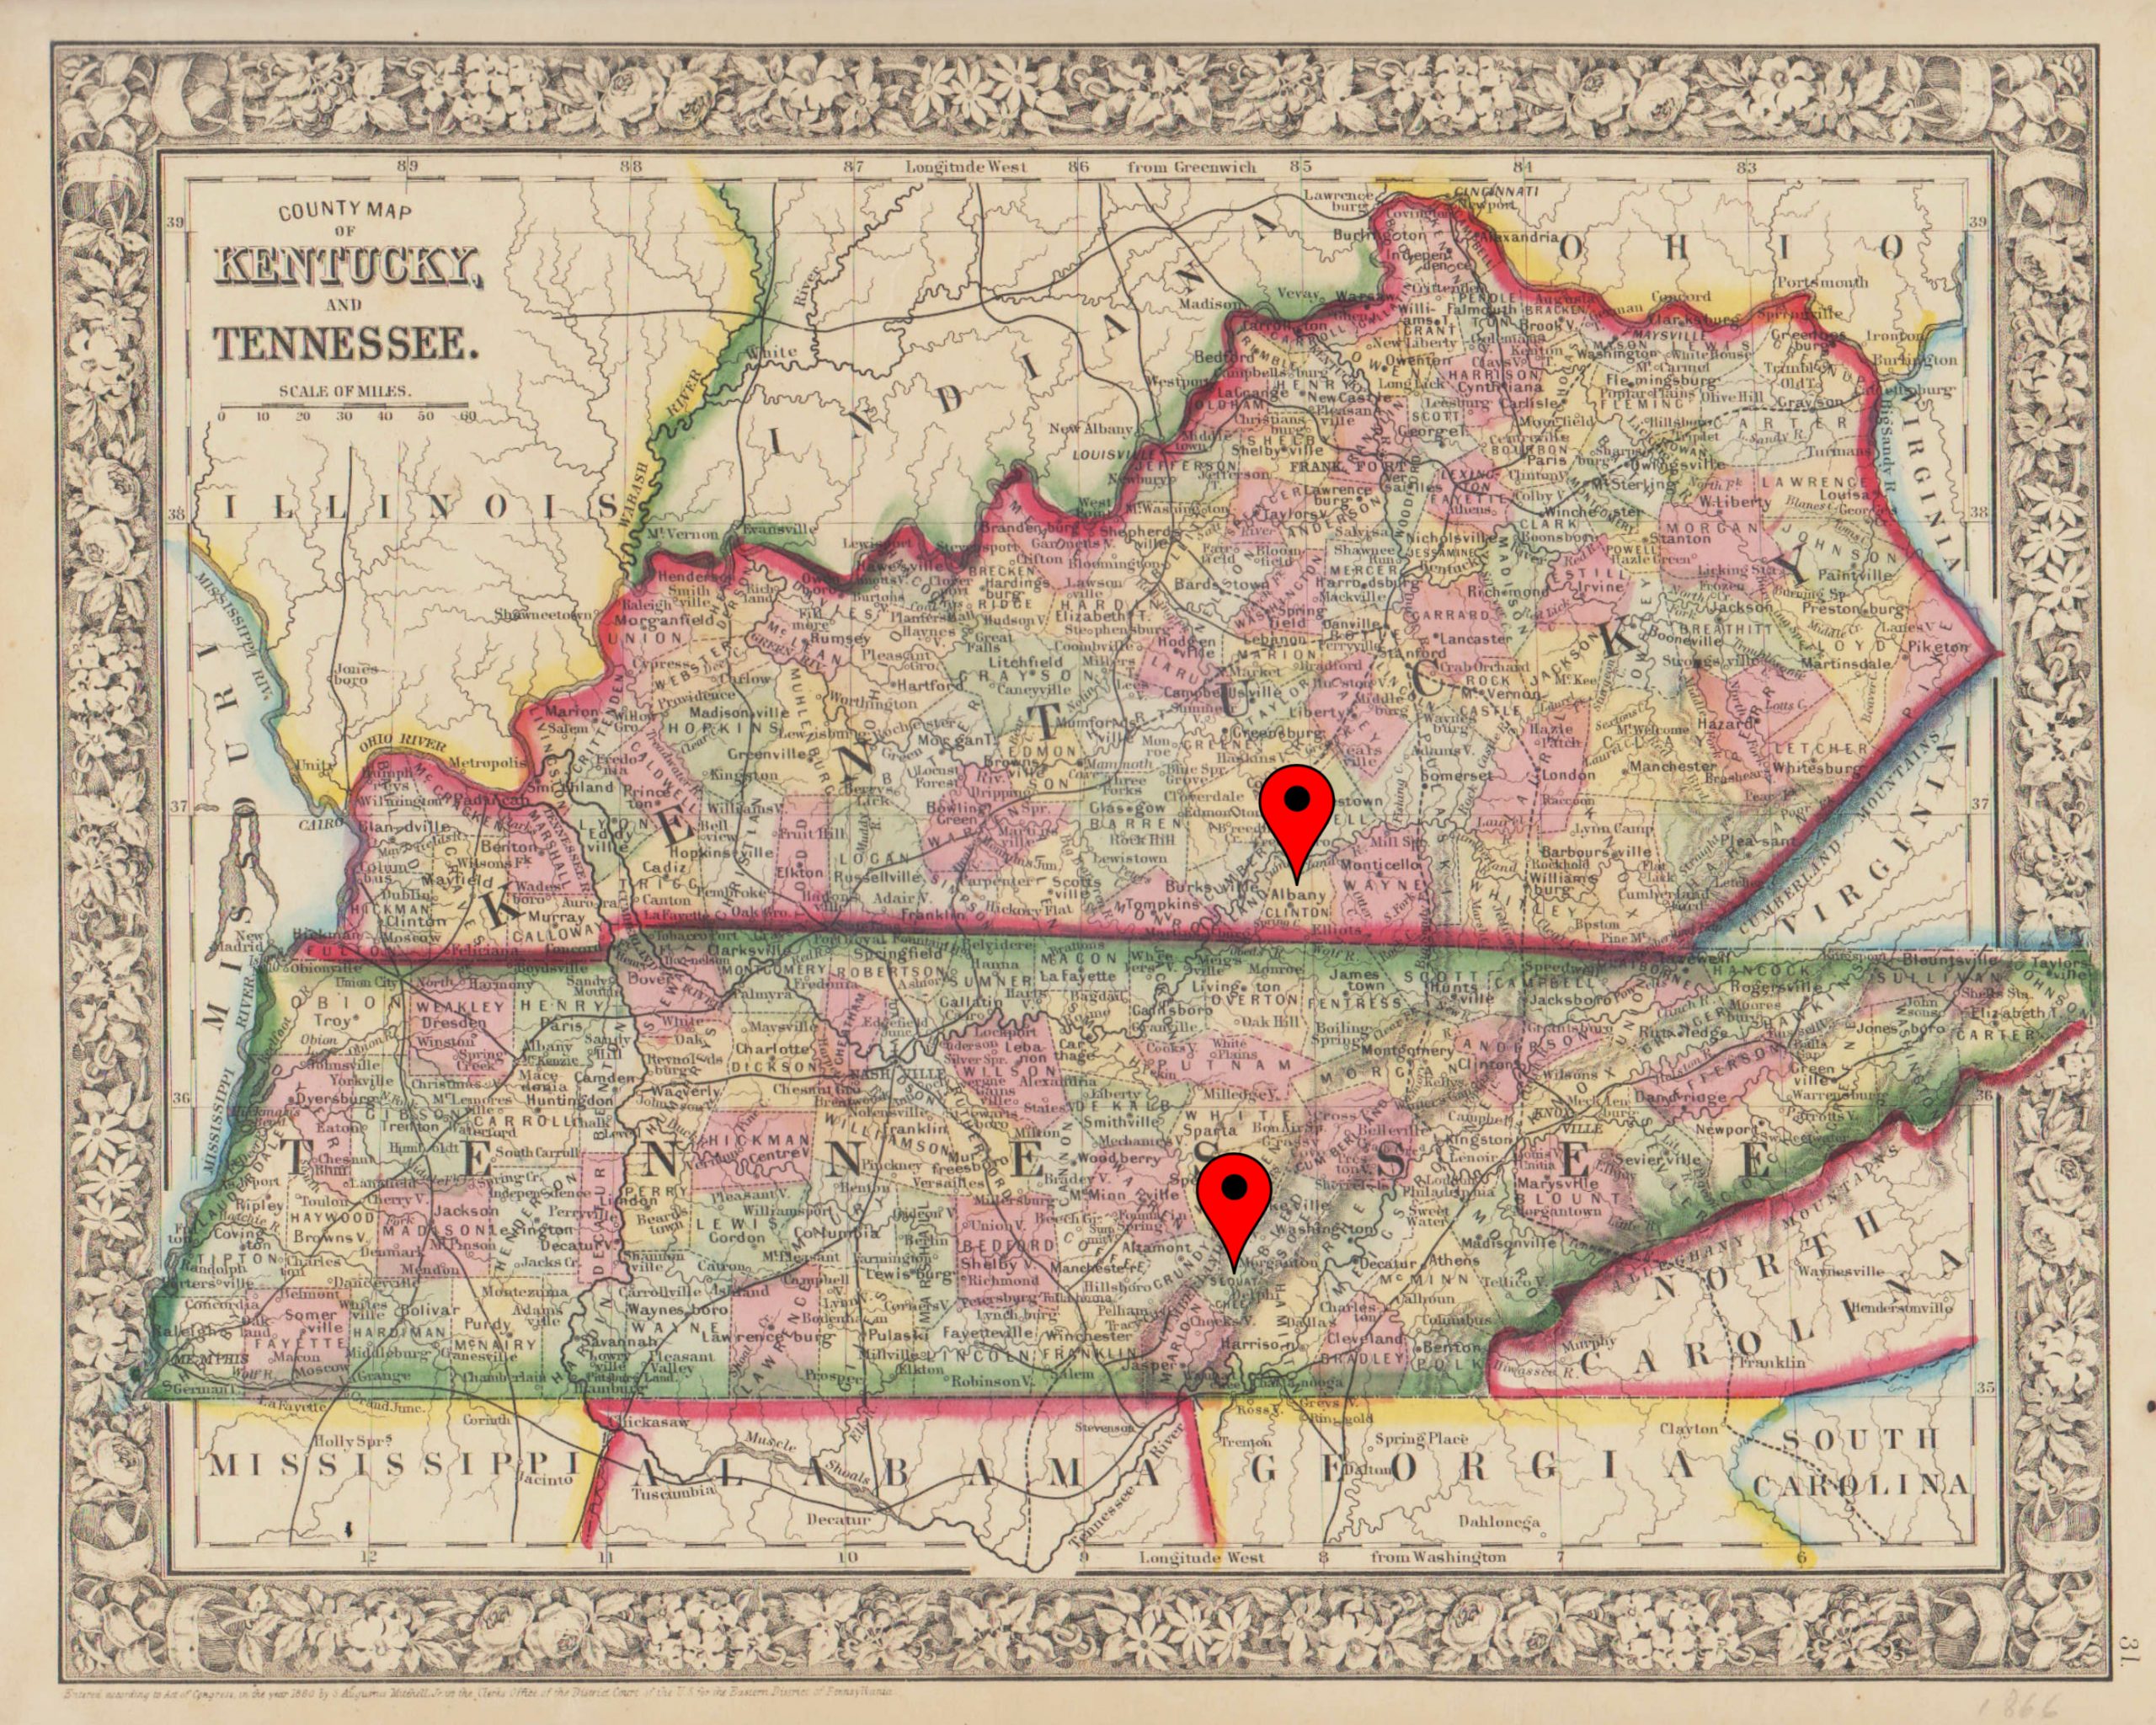 Kentucky-Tennessee 1866 Map